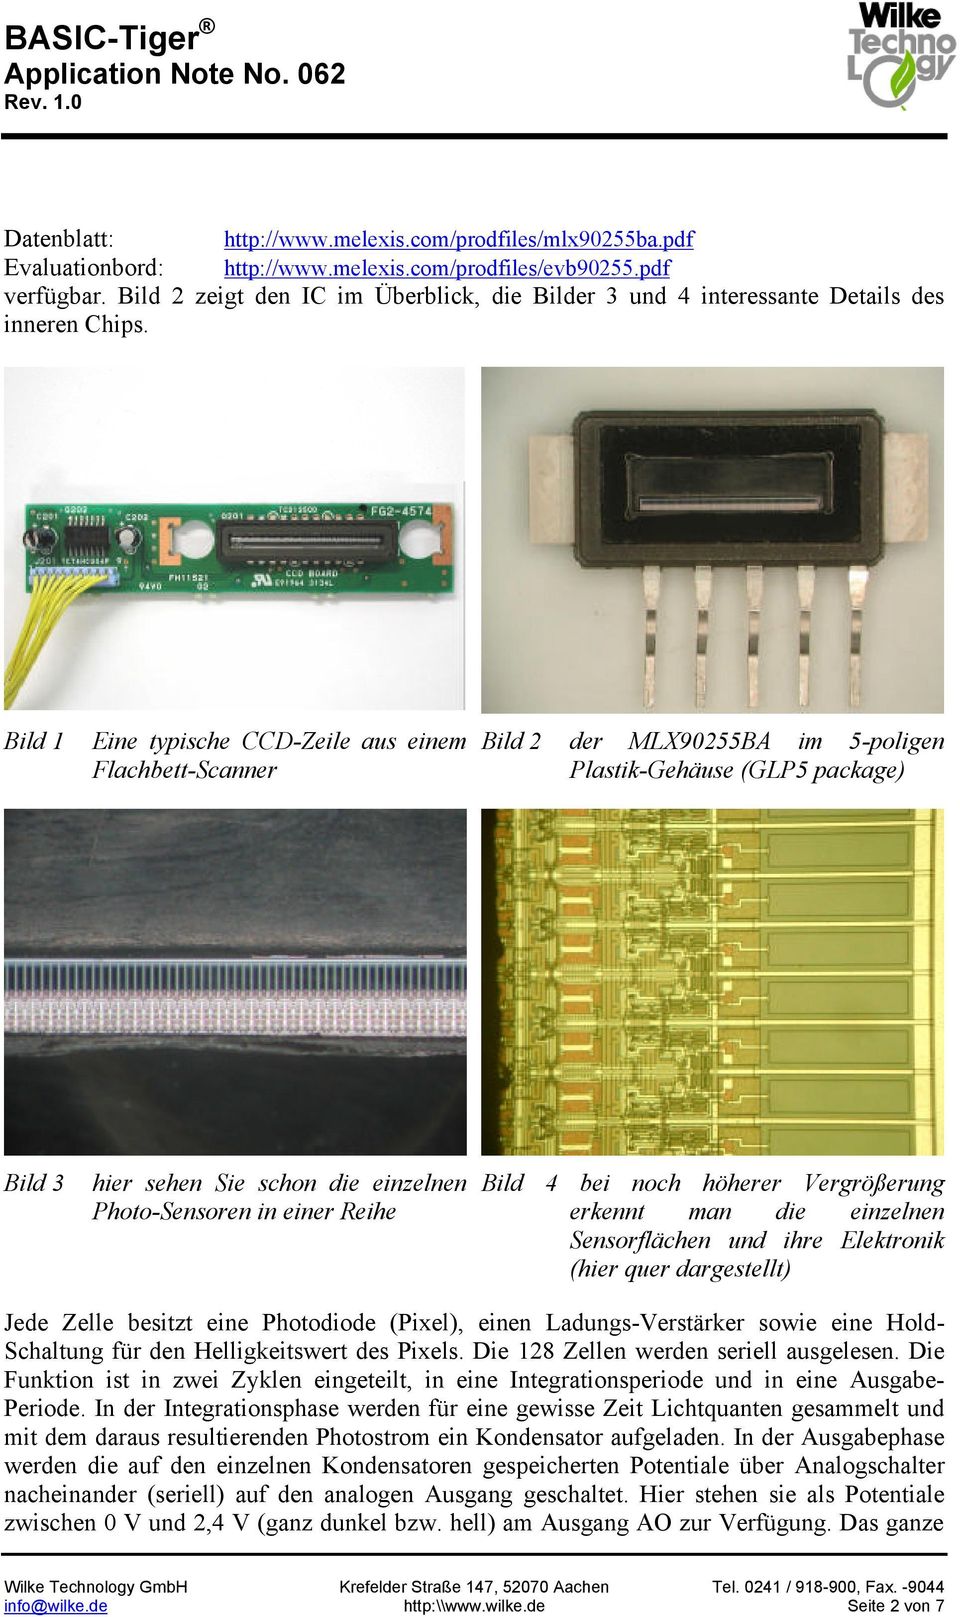 Bild 1 Eine typische CCD-Zeile aus einem Flachbett-Scanner Bild 2 der MLX90255BA im 5-poligen Plastik-Gehäuse (GLP5 package) Bild 3 hier sehen Sie schon die einzelnen Photo-Sensoren in einer Reihe